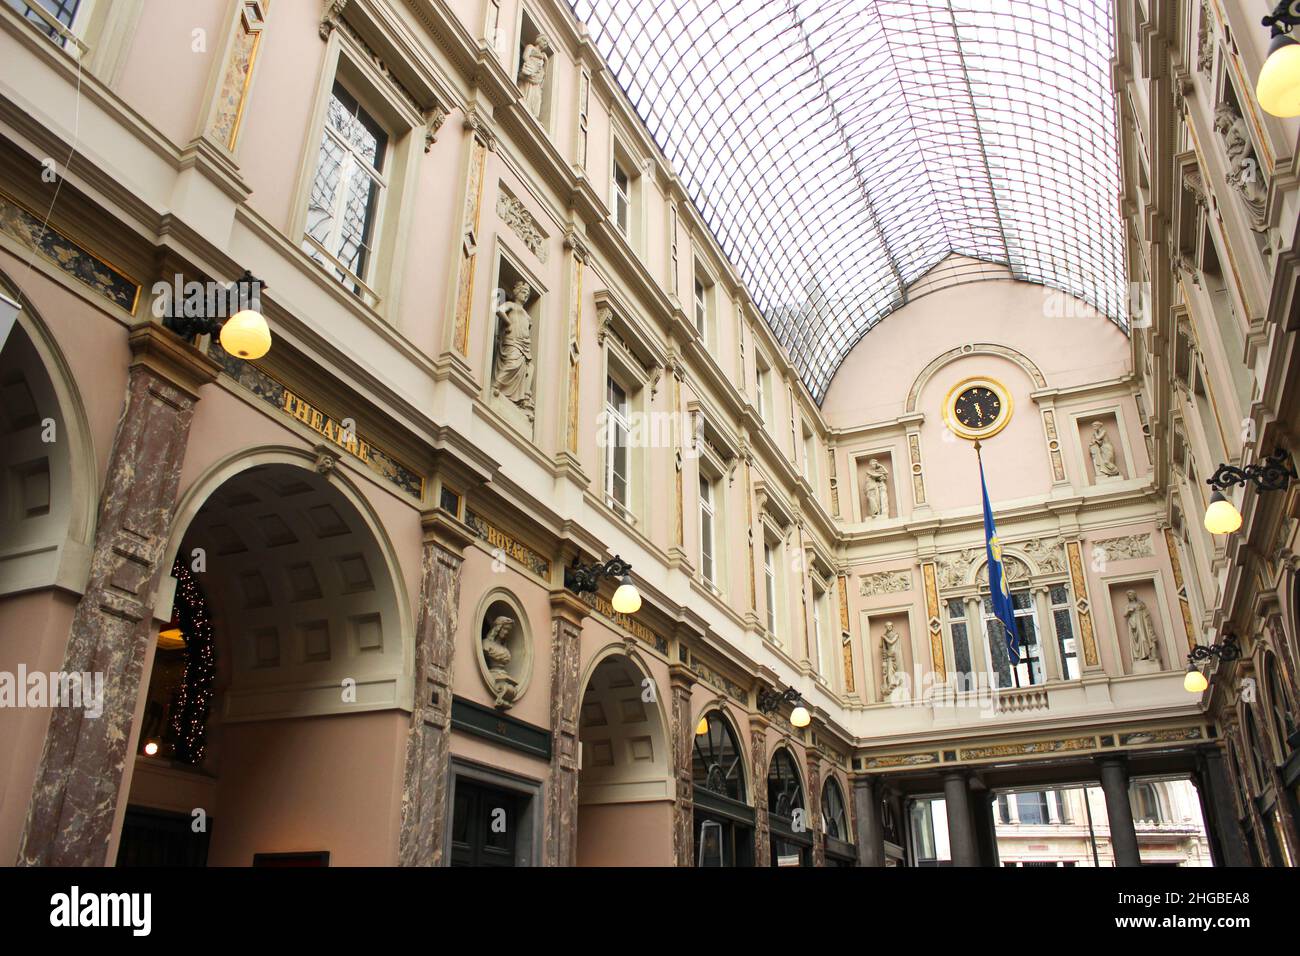 Bruxelles, Belgique; 01 26 2018: La Galerie de la Reine Banque D'Images